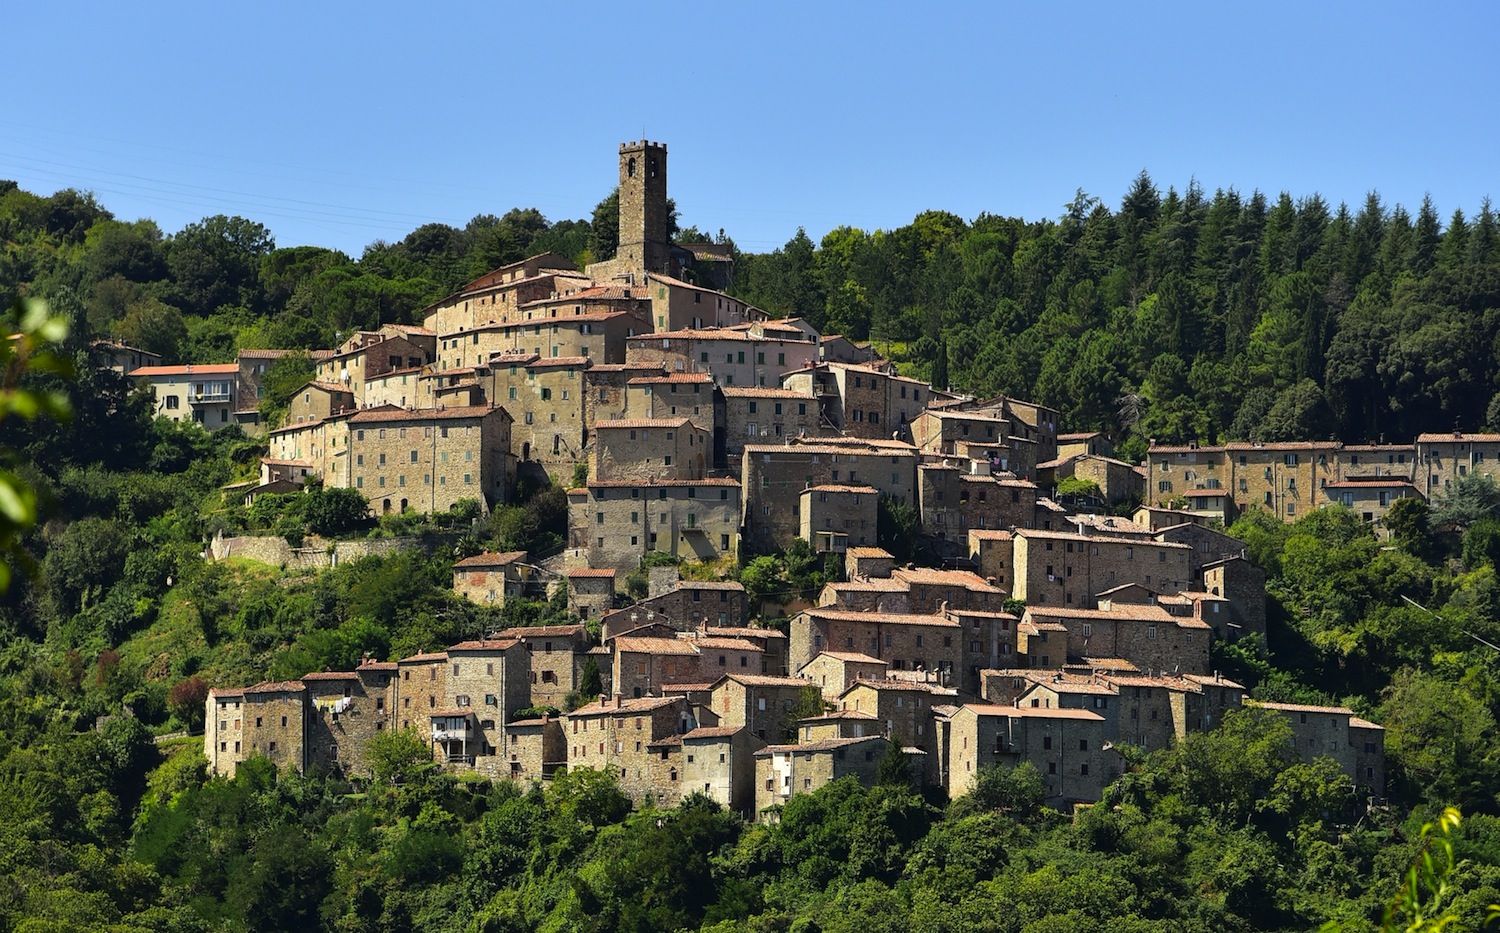 La Toscana è considerata una world top destination grazie alla varietà del suo paesaggio e dalla ricchezza del patrimonio artistico-culturale